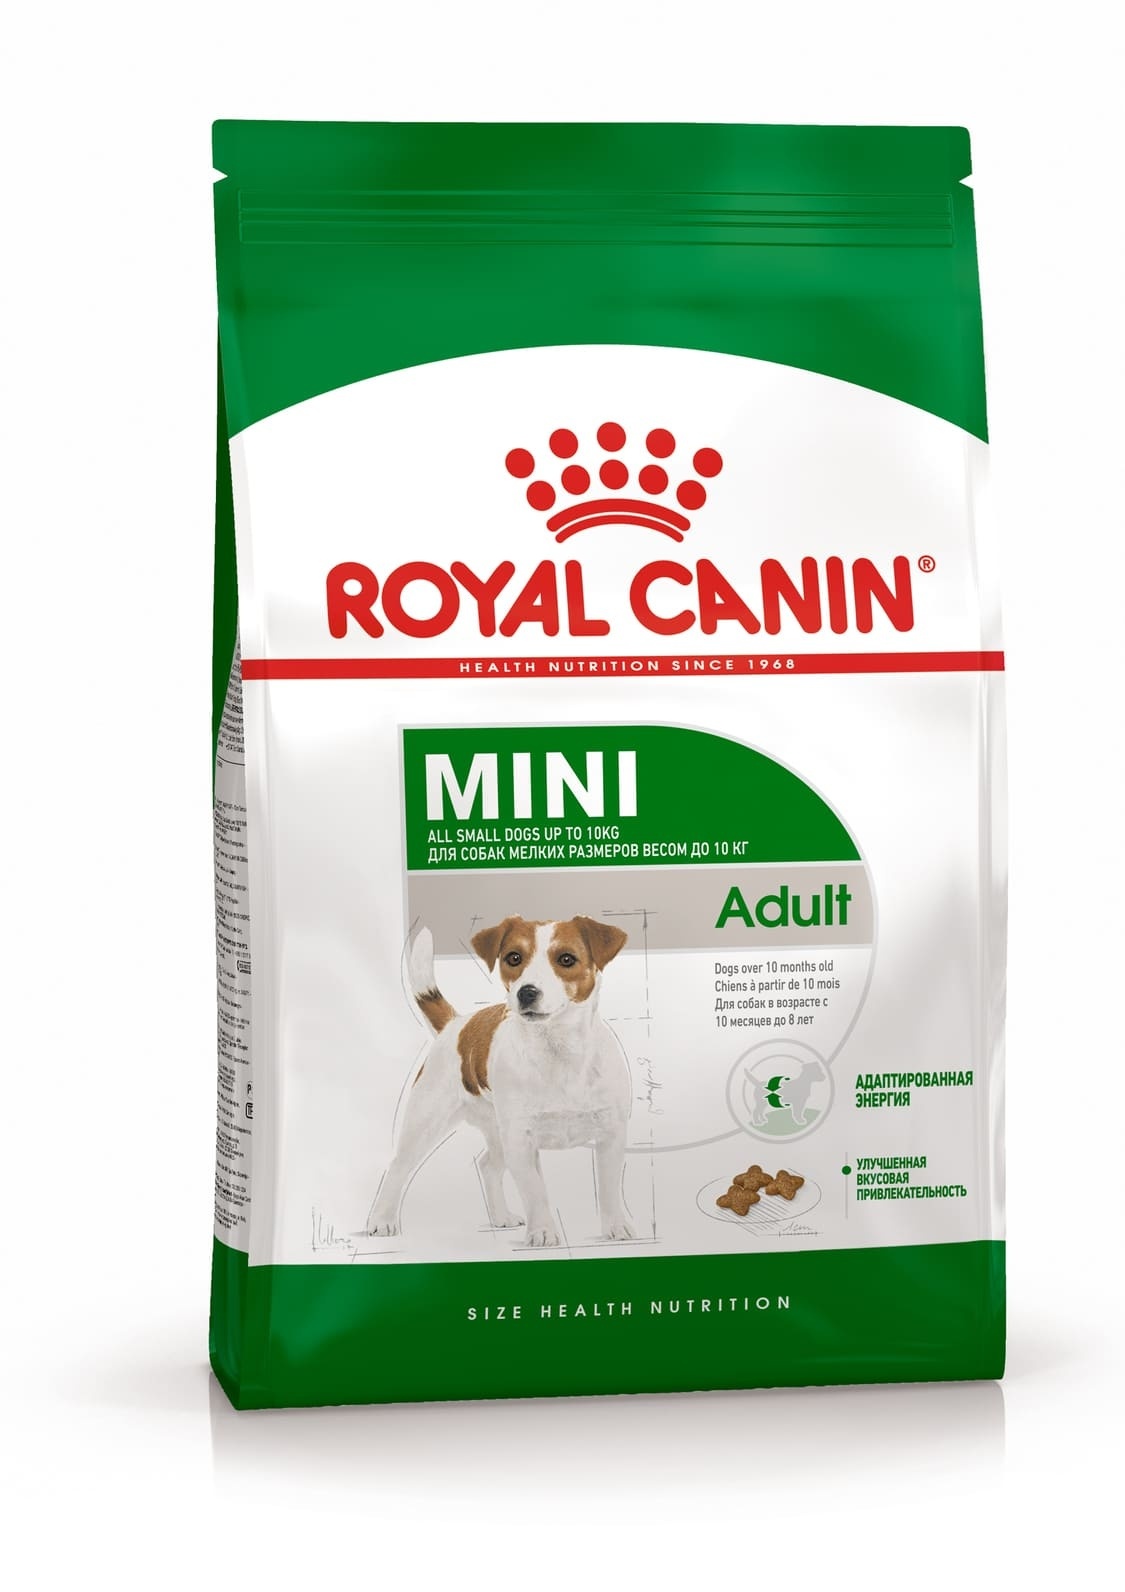 Royal Canin Корм Royal Canin корм для взрослых собак малых пород: до 10 кг, с 10 месяцев до 8 лет (2 кг)